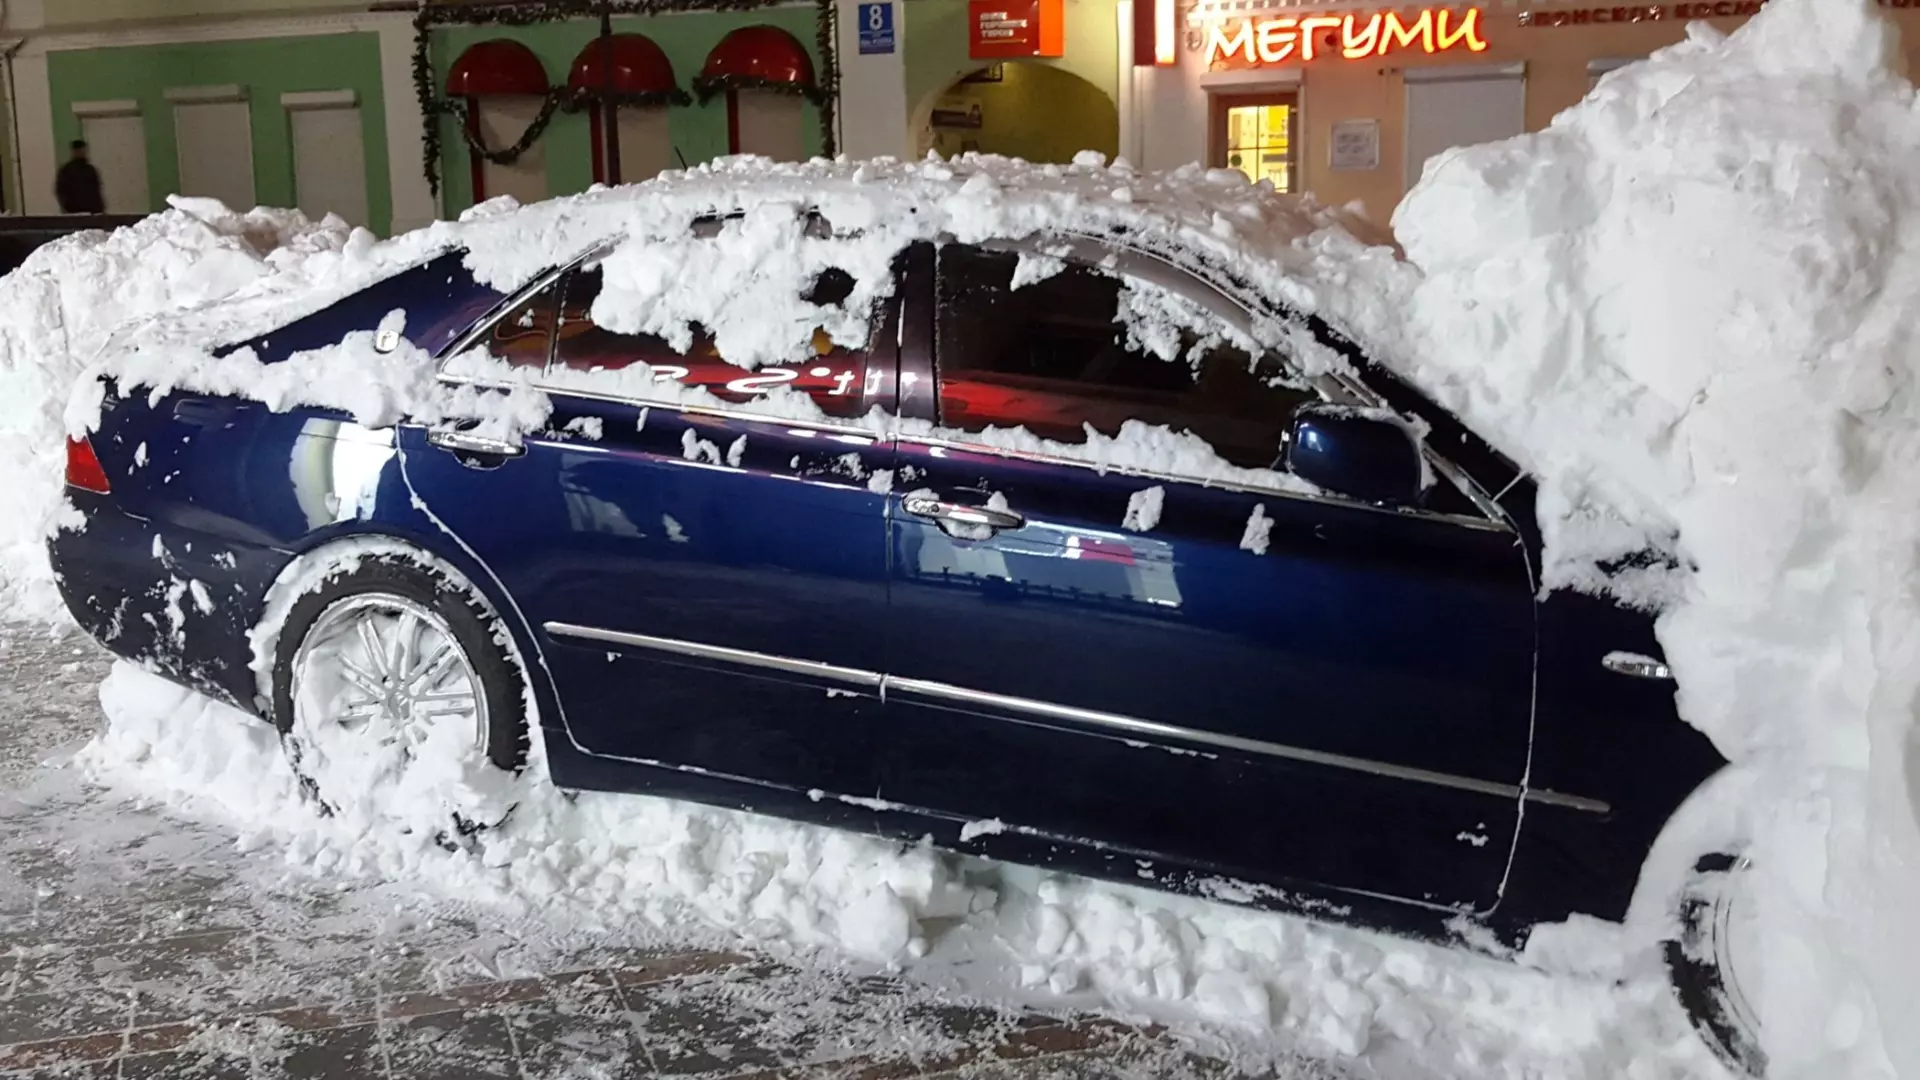 Откопаем и отбуксируем: какие услуги предлагают автомобилистам этой зимой в Ижевске